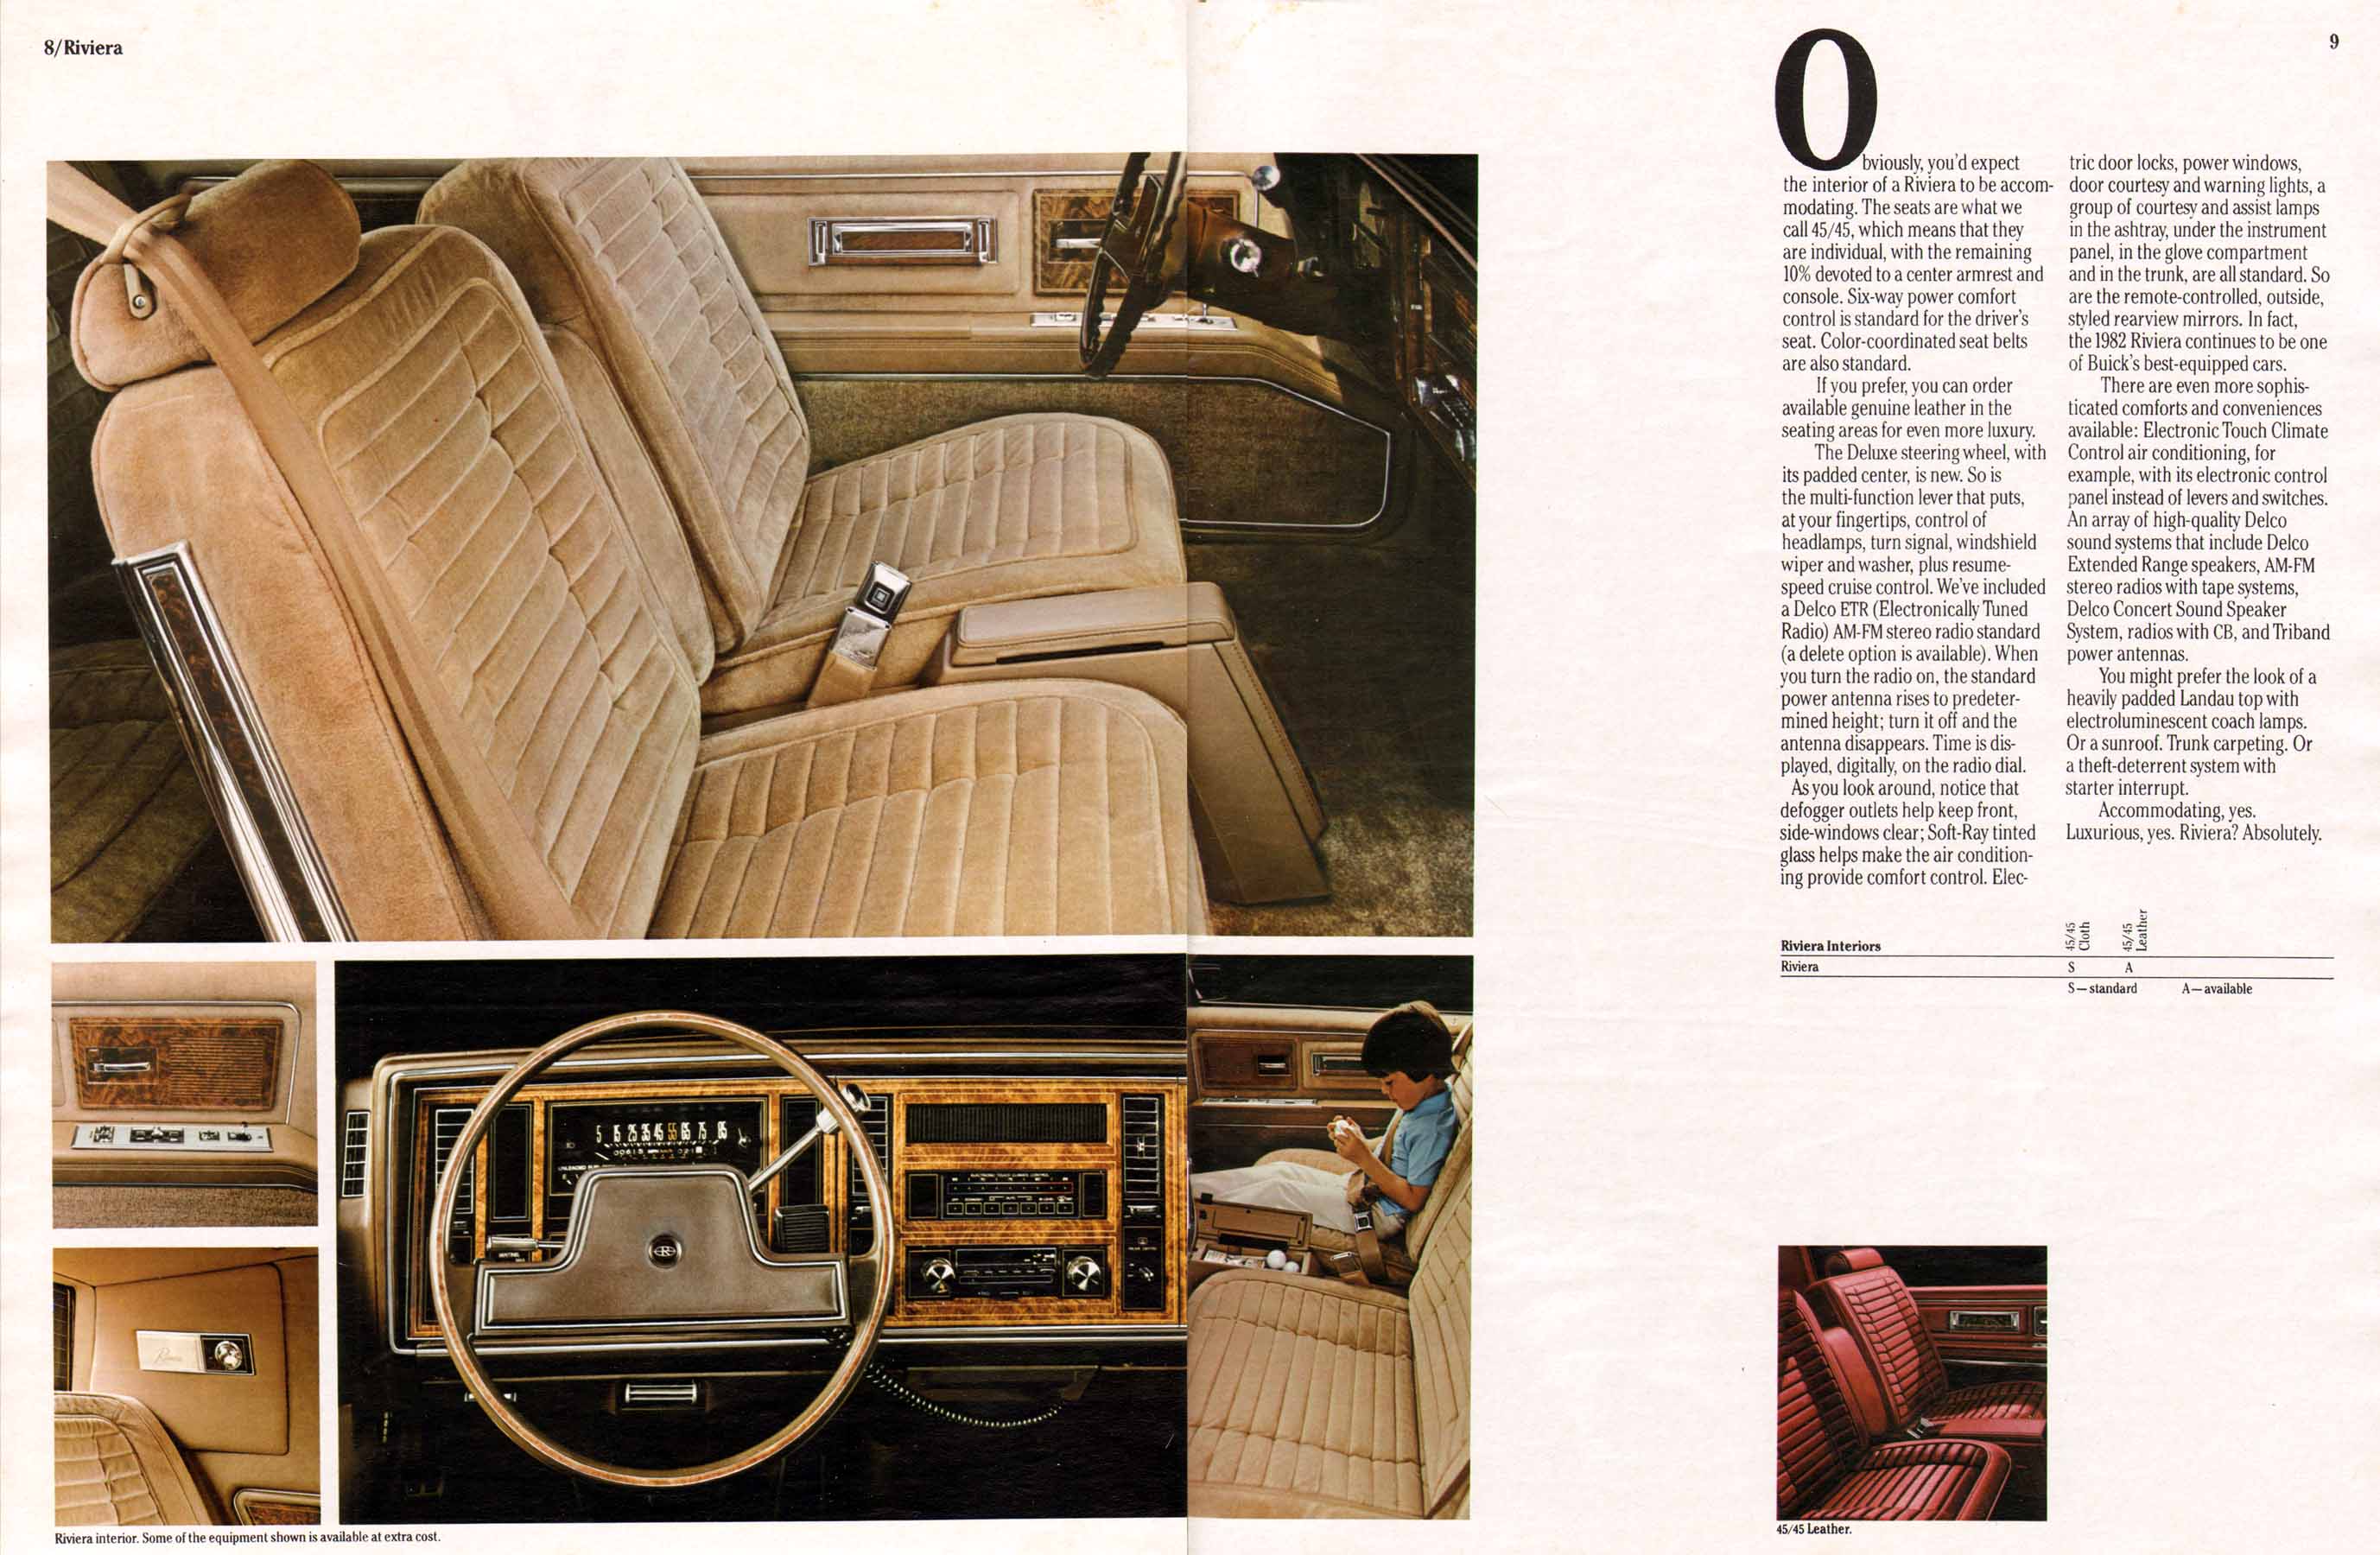 1982 Buick Full Line Prestige-08-09